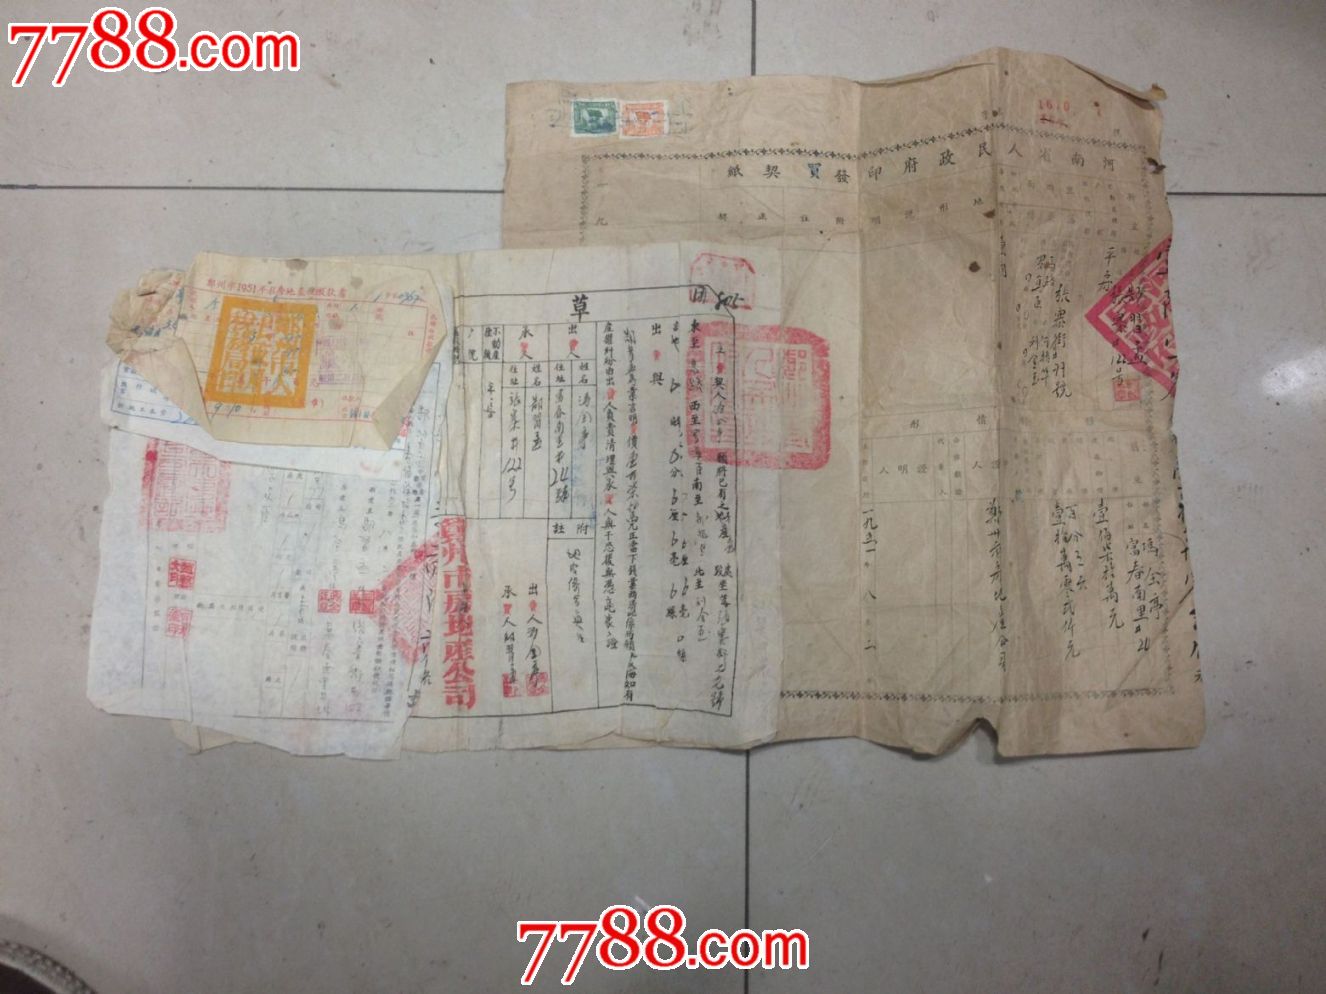 五一年老郑州卖房证照一整套-价格:200元-se2